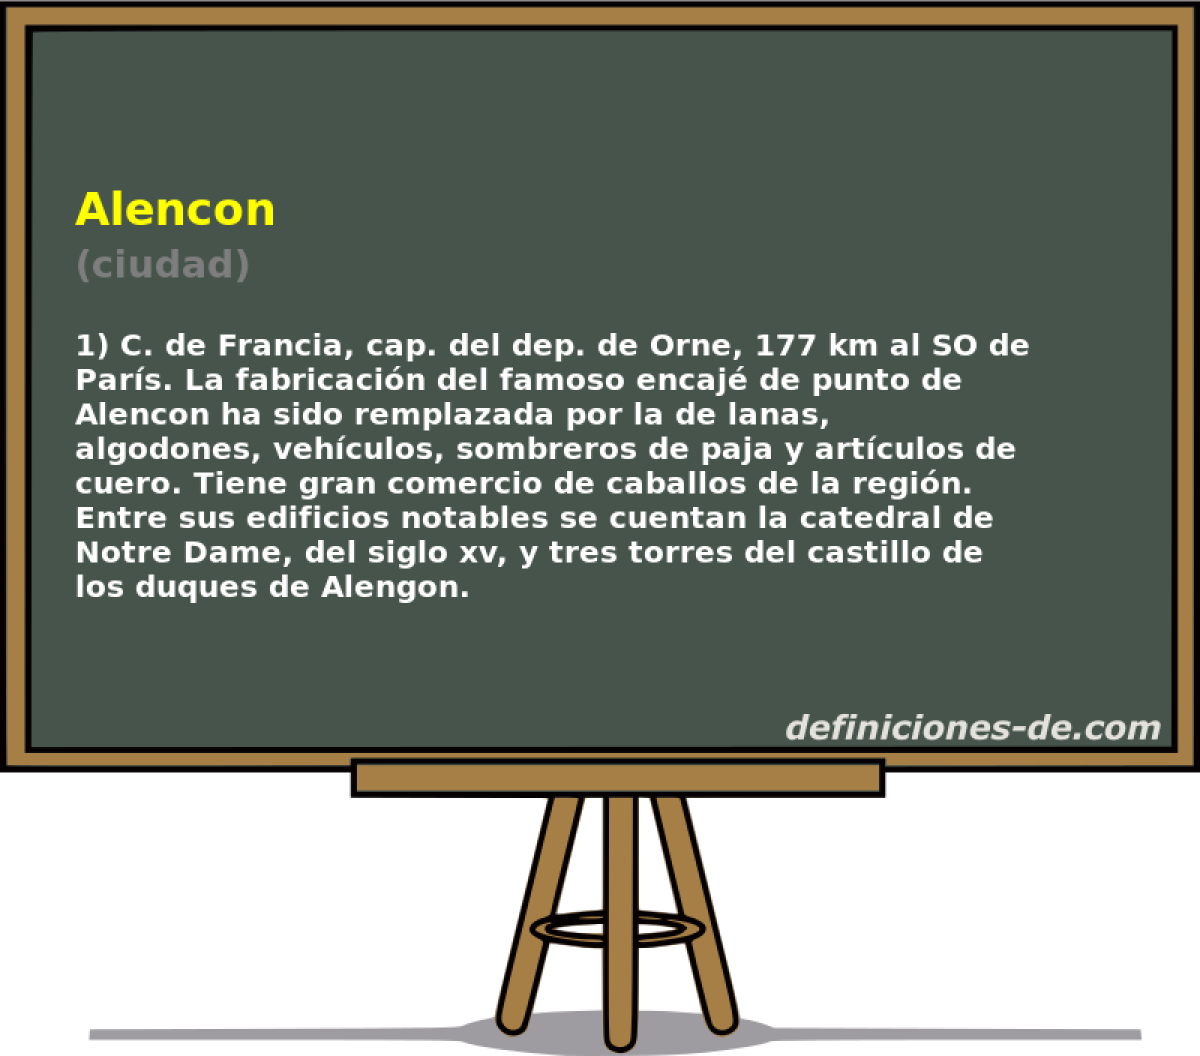 Alencon (ciudad)